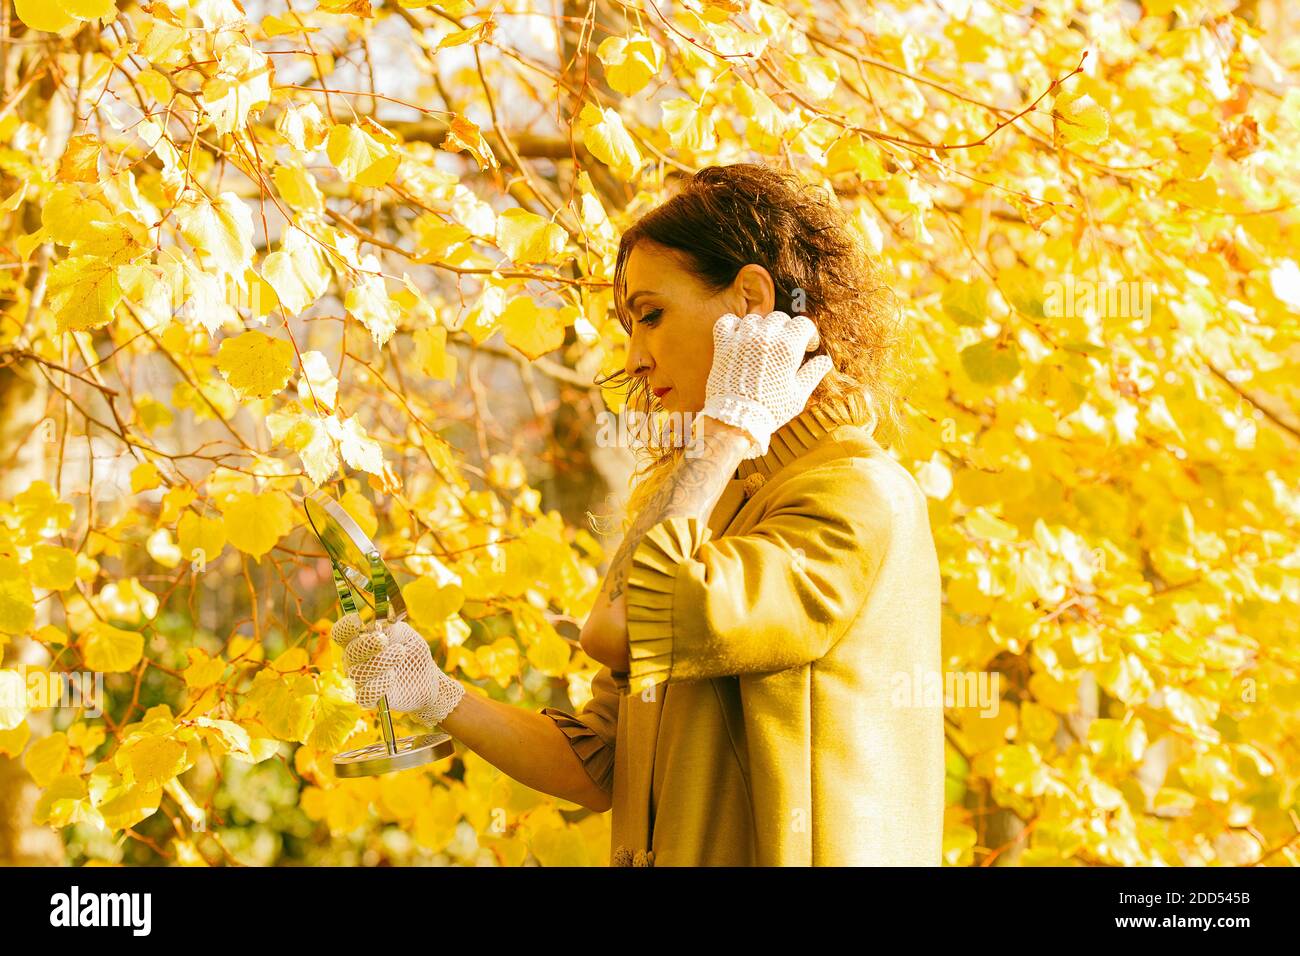 Frau retuschiert ihr Haar vor dem Spiegel inmitten eines gelblichen Parks, spanien Stockfoto